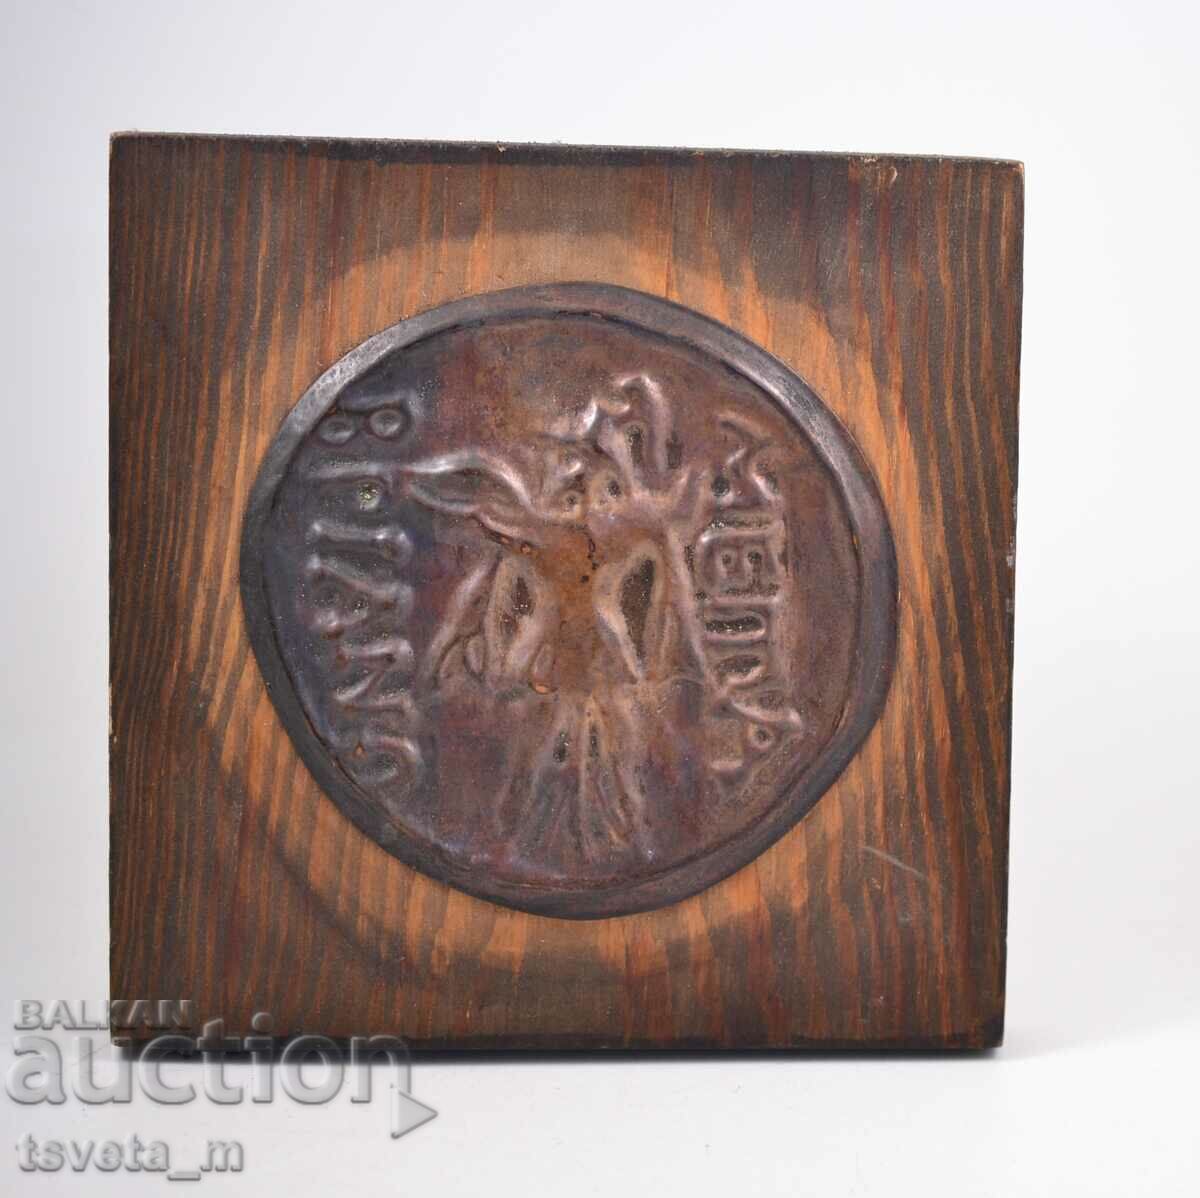 Panou decorativ din lemn, monedă antică, cupru